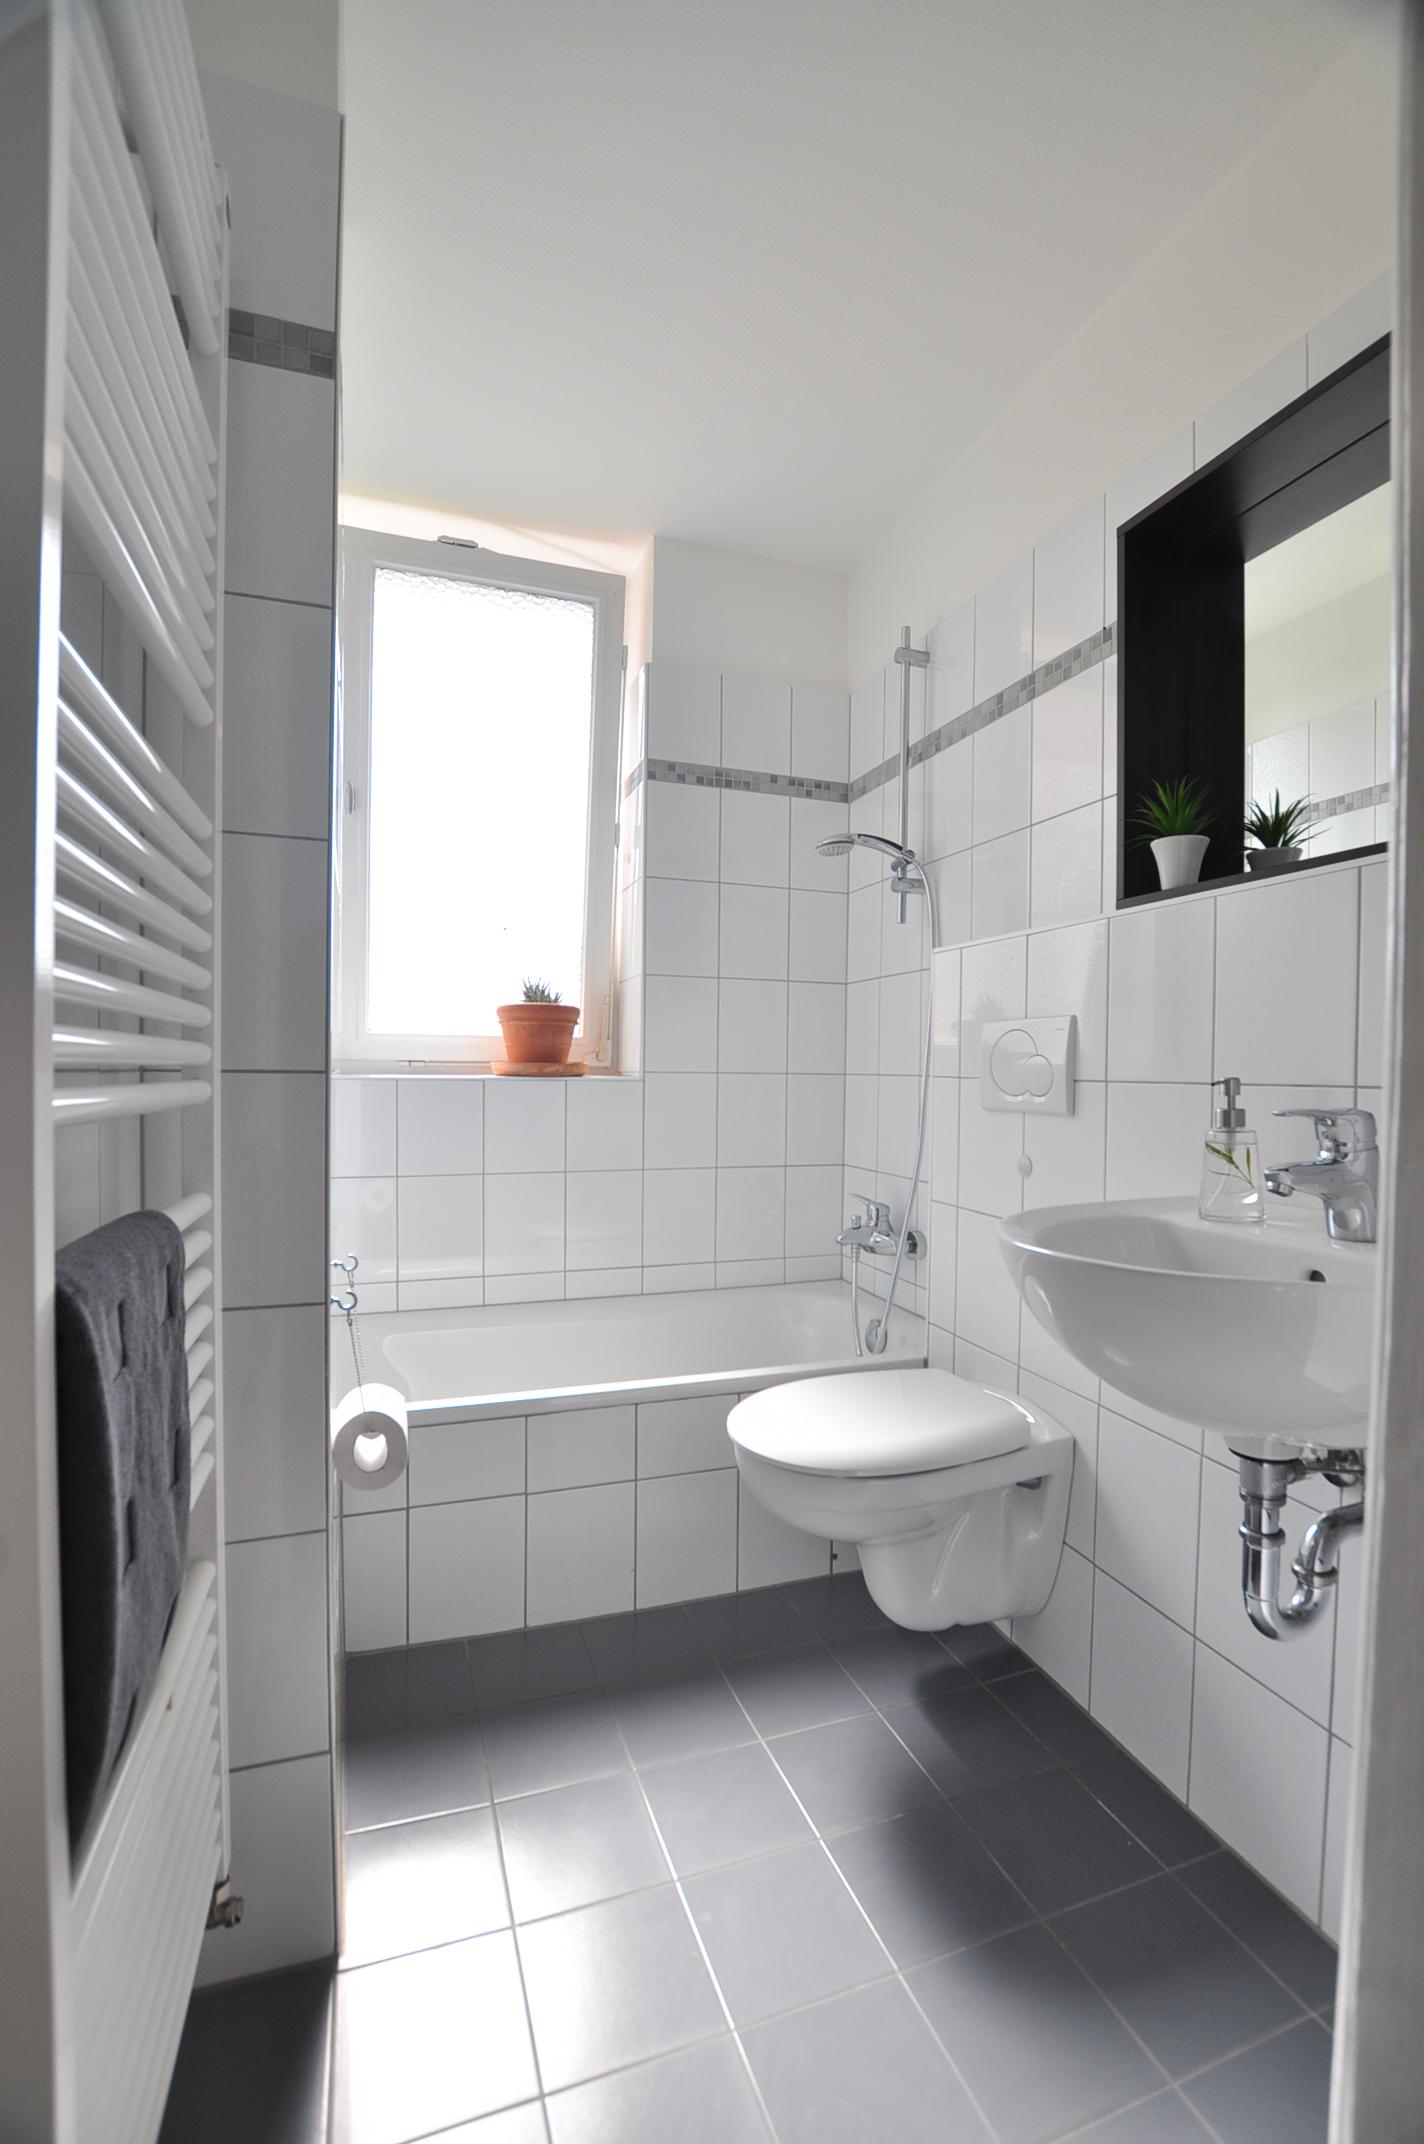 Badezimmer _ möblierte Wohnung #fliesen #badezimmer #weißefliesen #grauefliesen ©e-rent Agentur / Alina Edelstein